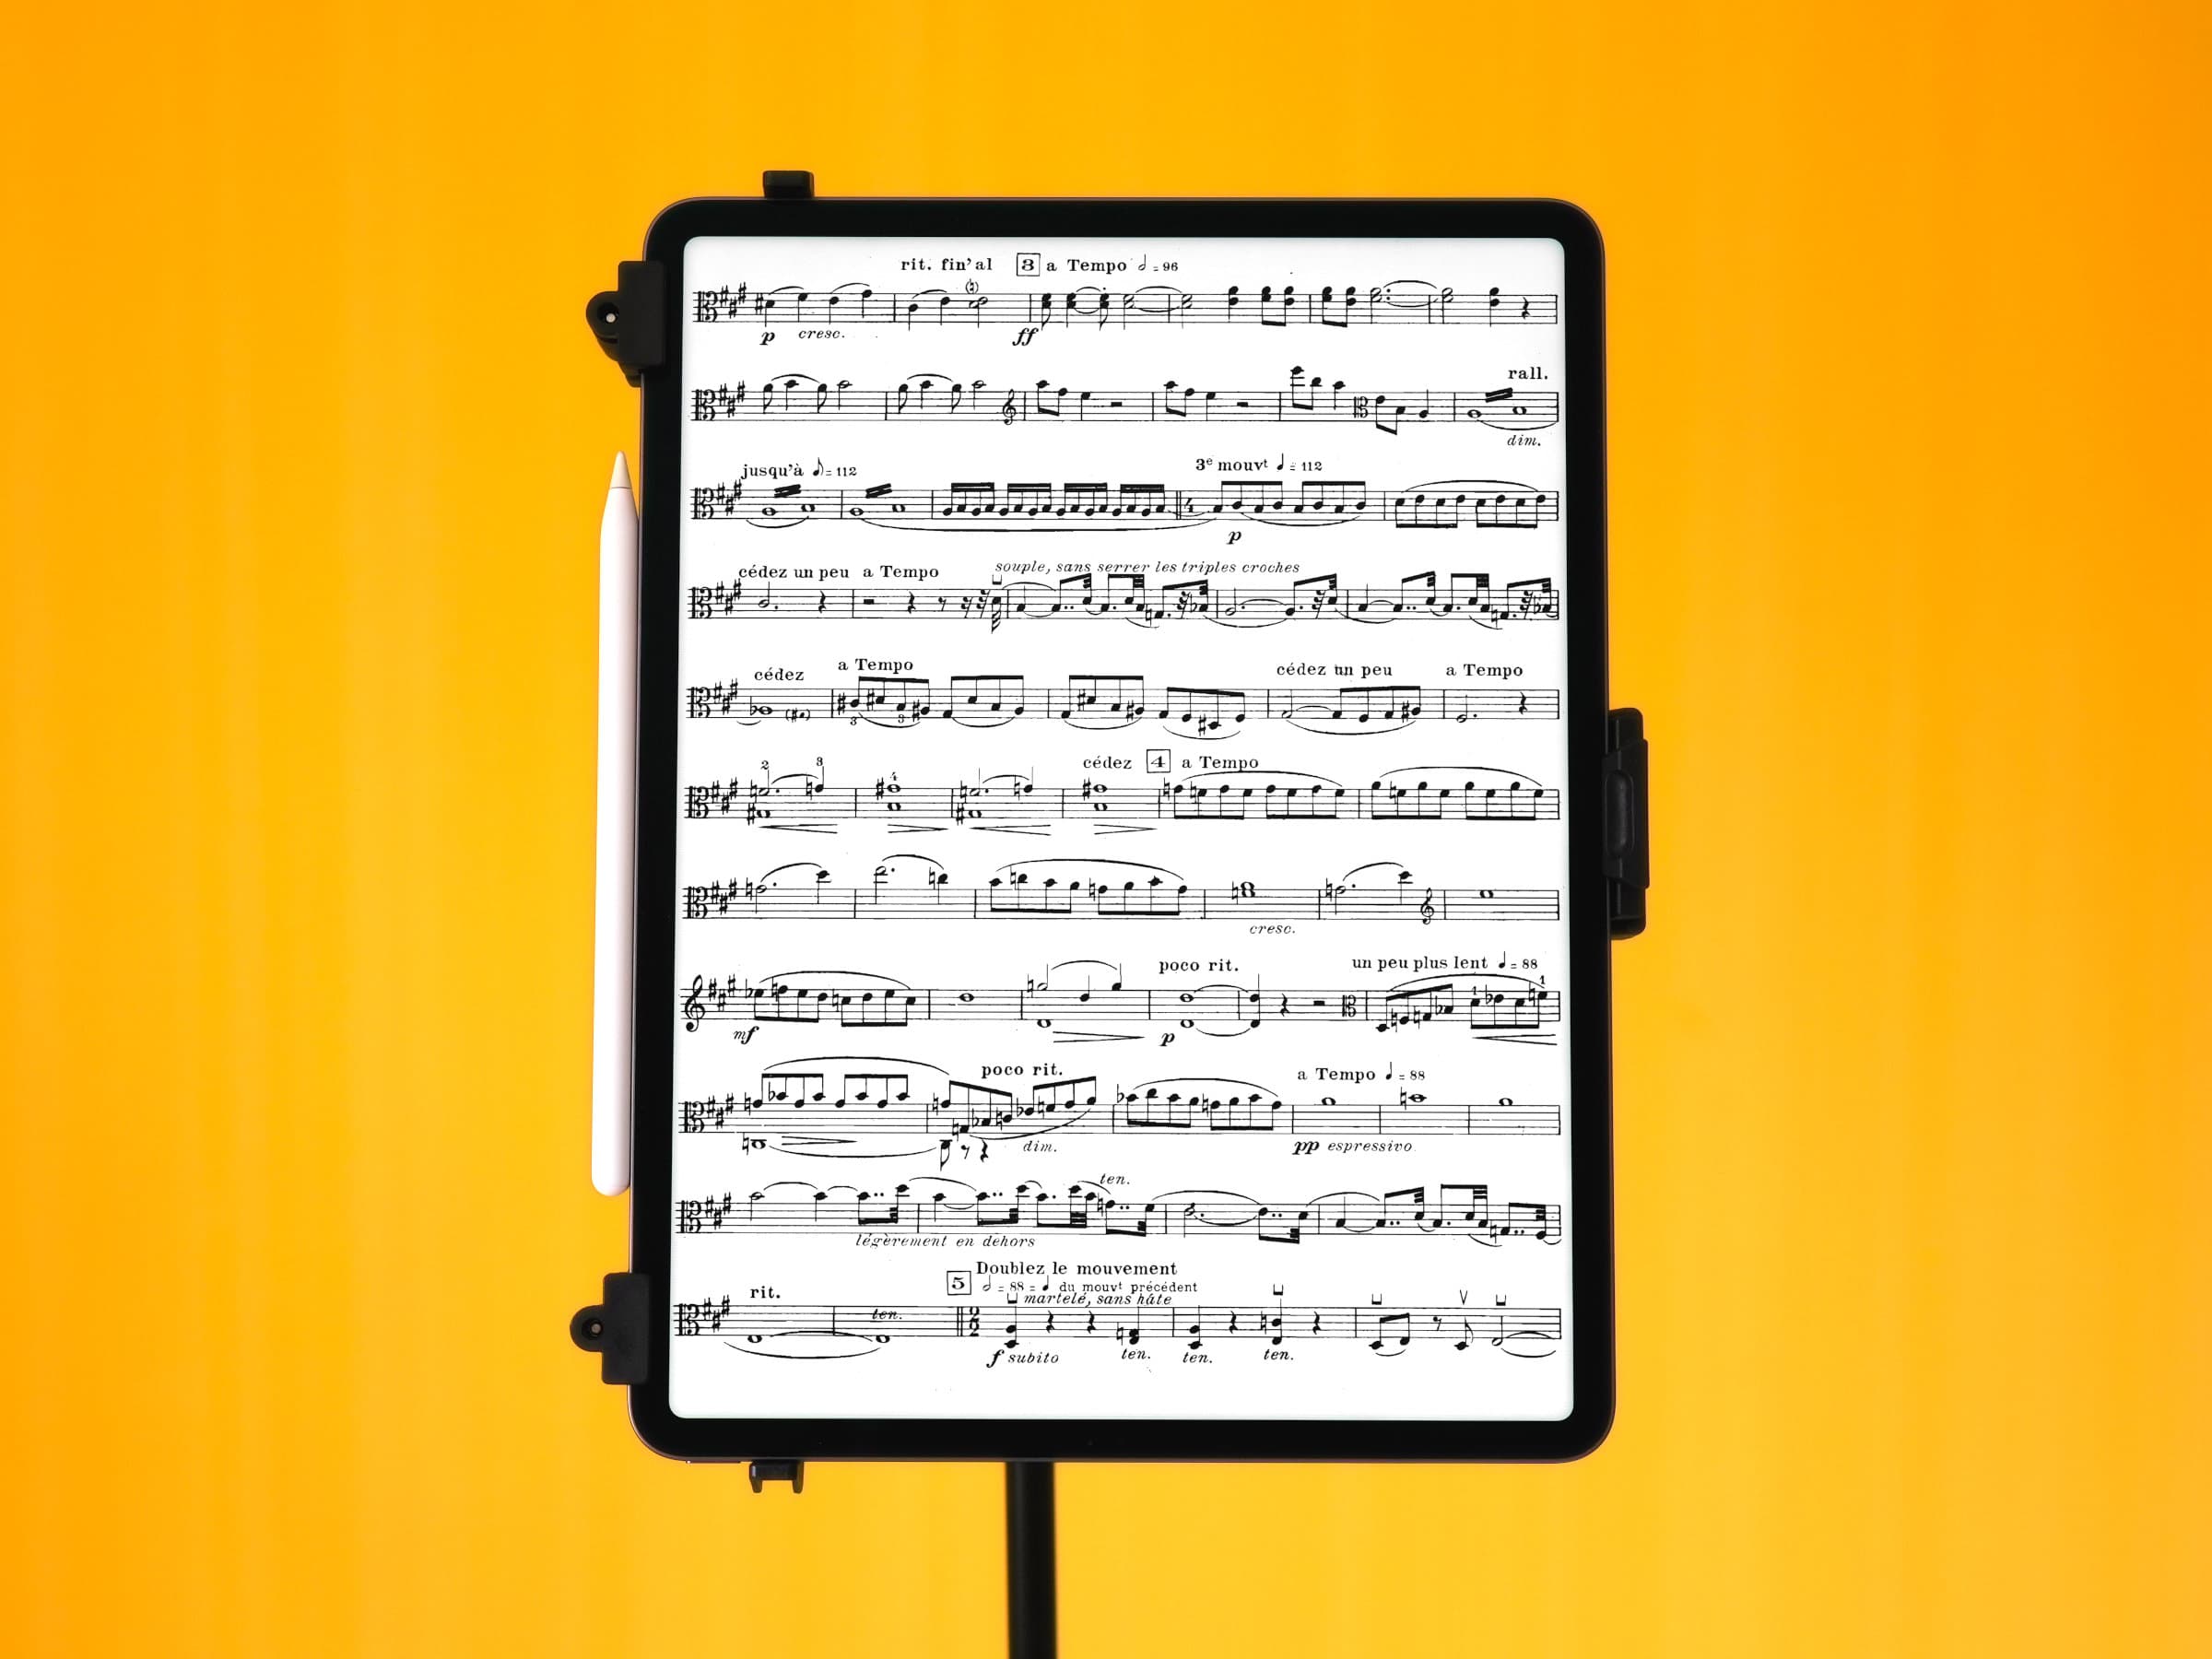 Partitions de musique sur un Apple iPad Pro 12,9 pouces (4x3)